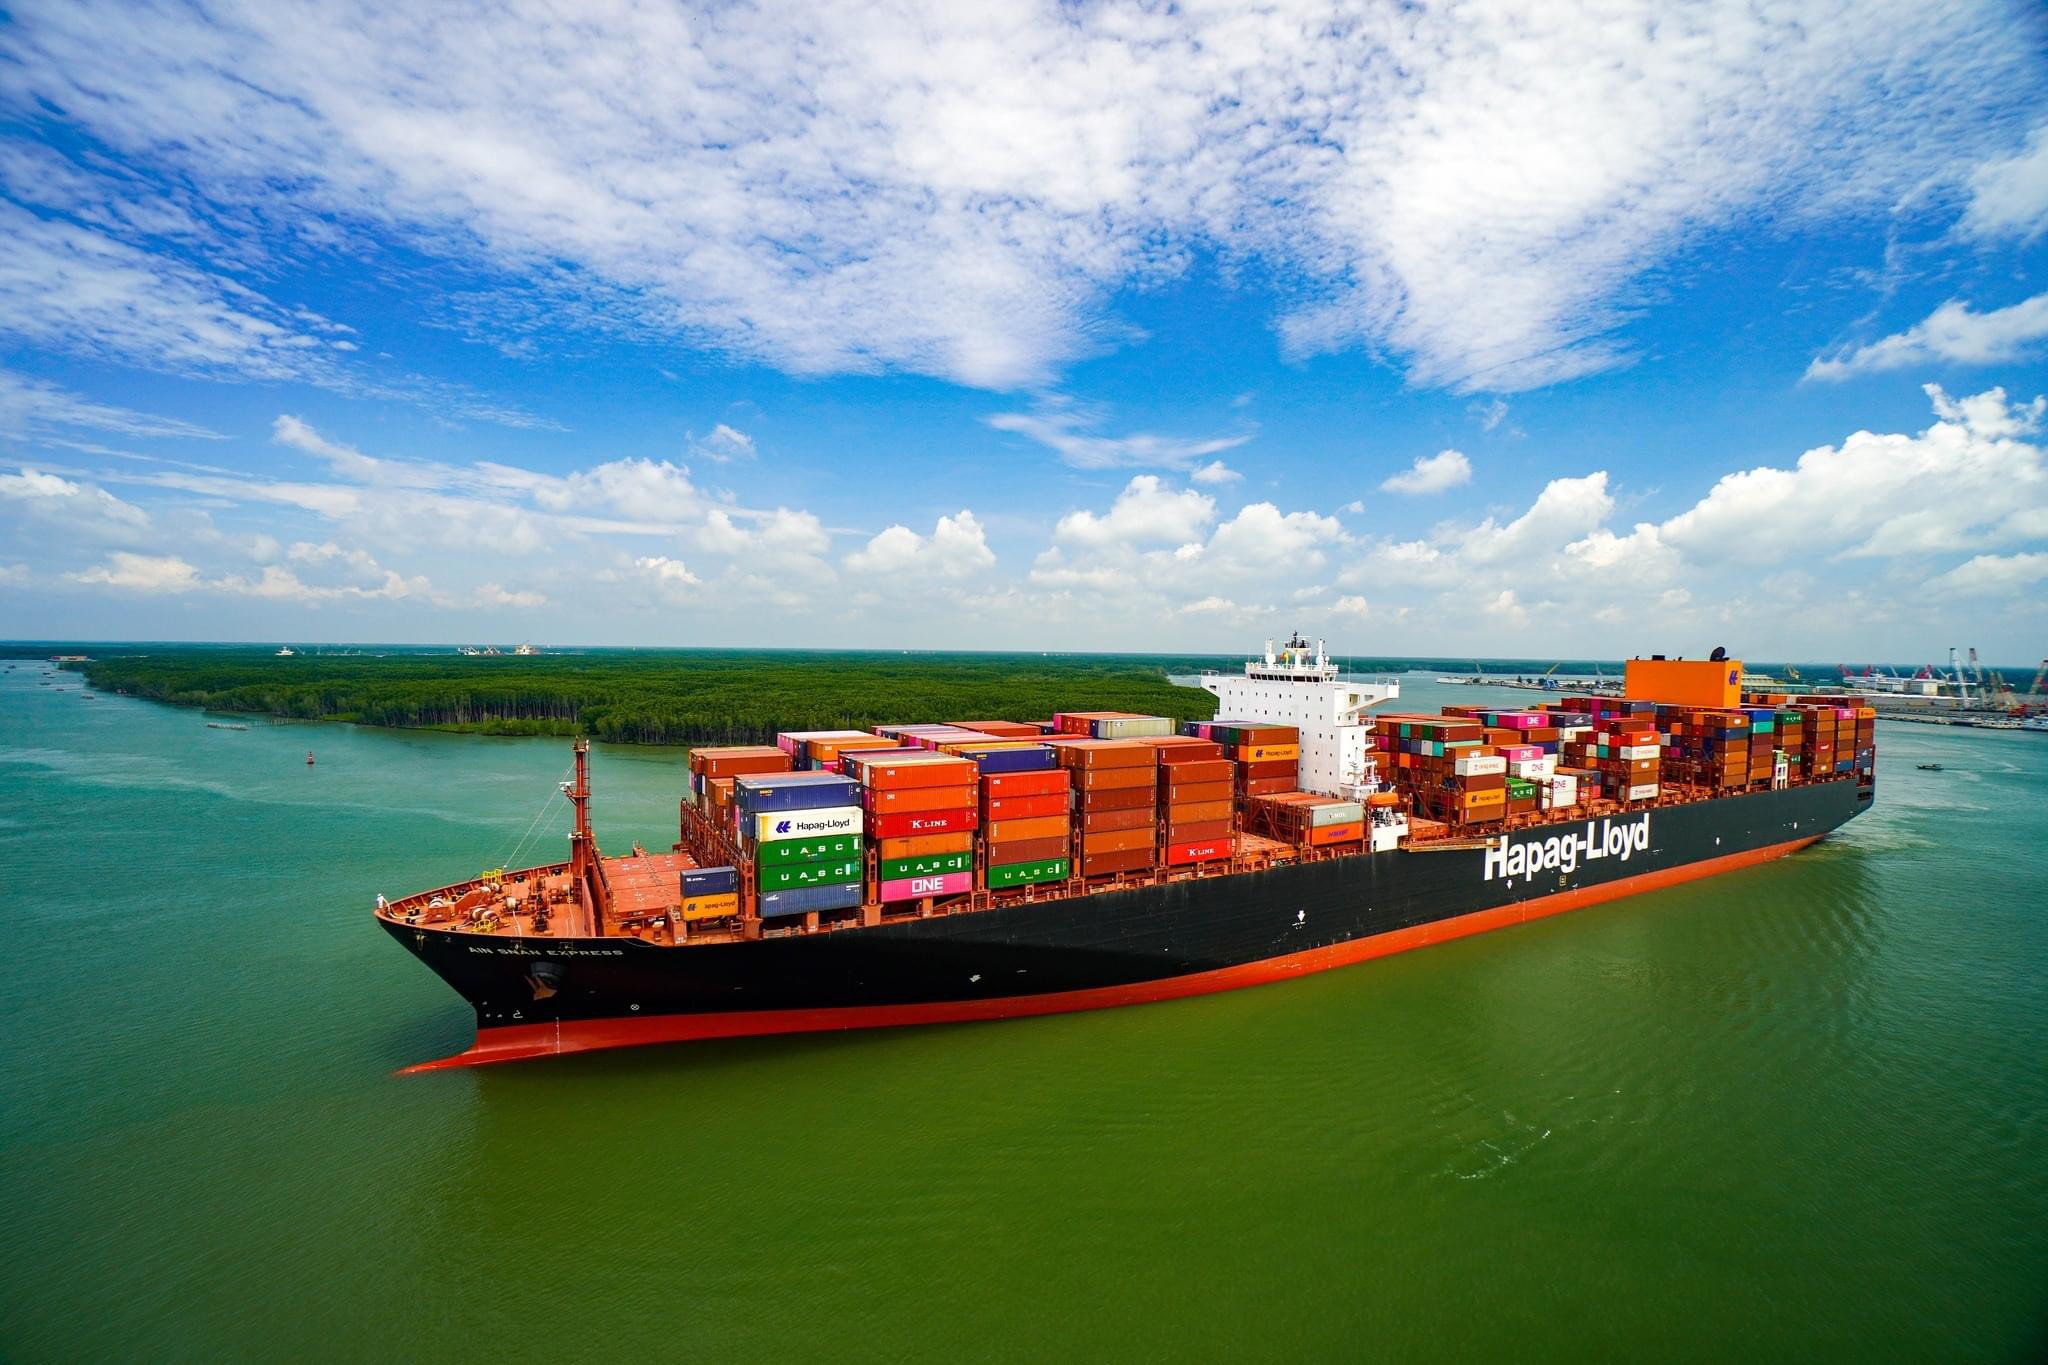 Tàu trọng tải lớn làm hàng tại cảng TCIT, cảng container nước sâu có sản lượng thông qua lớn nhất Việt Nam.